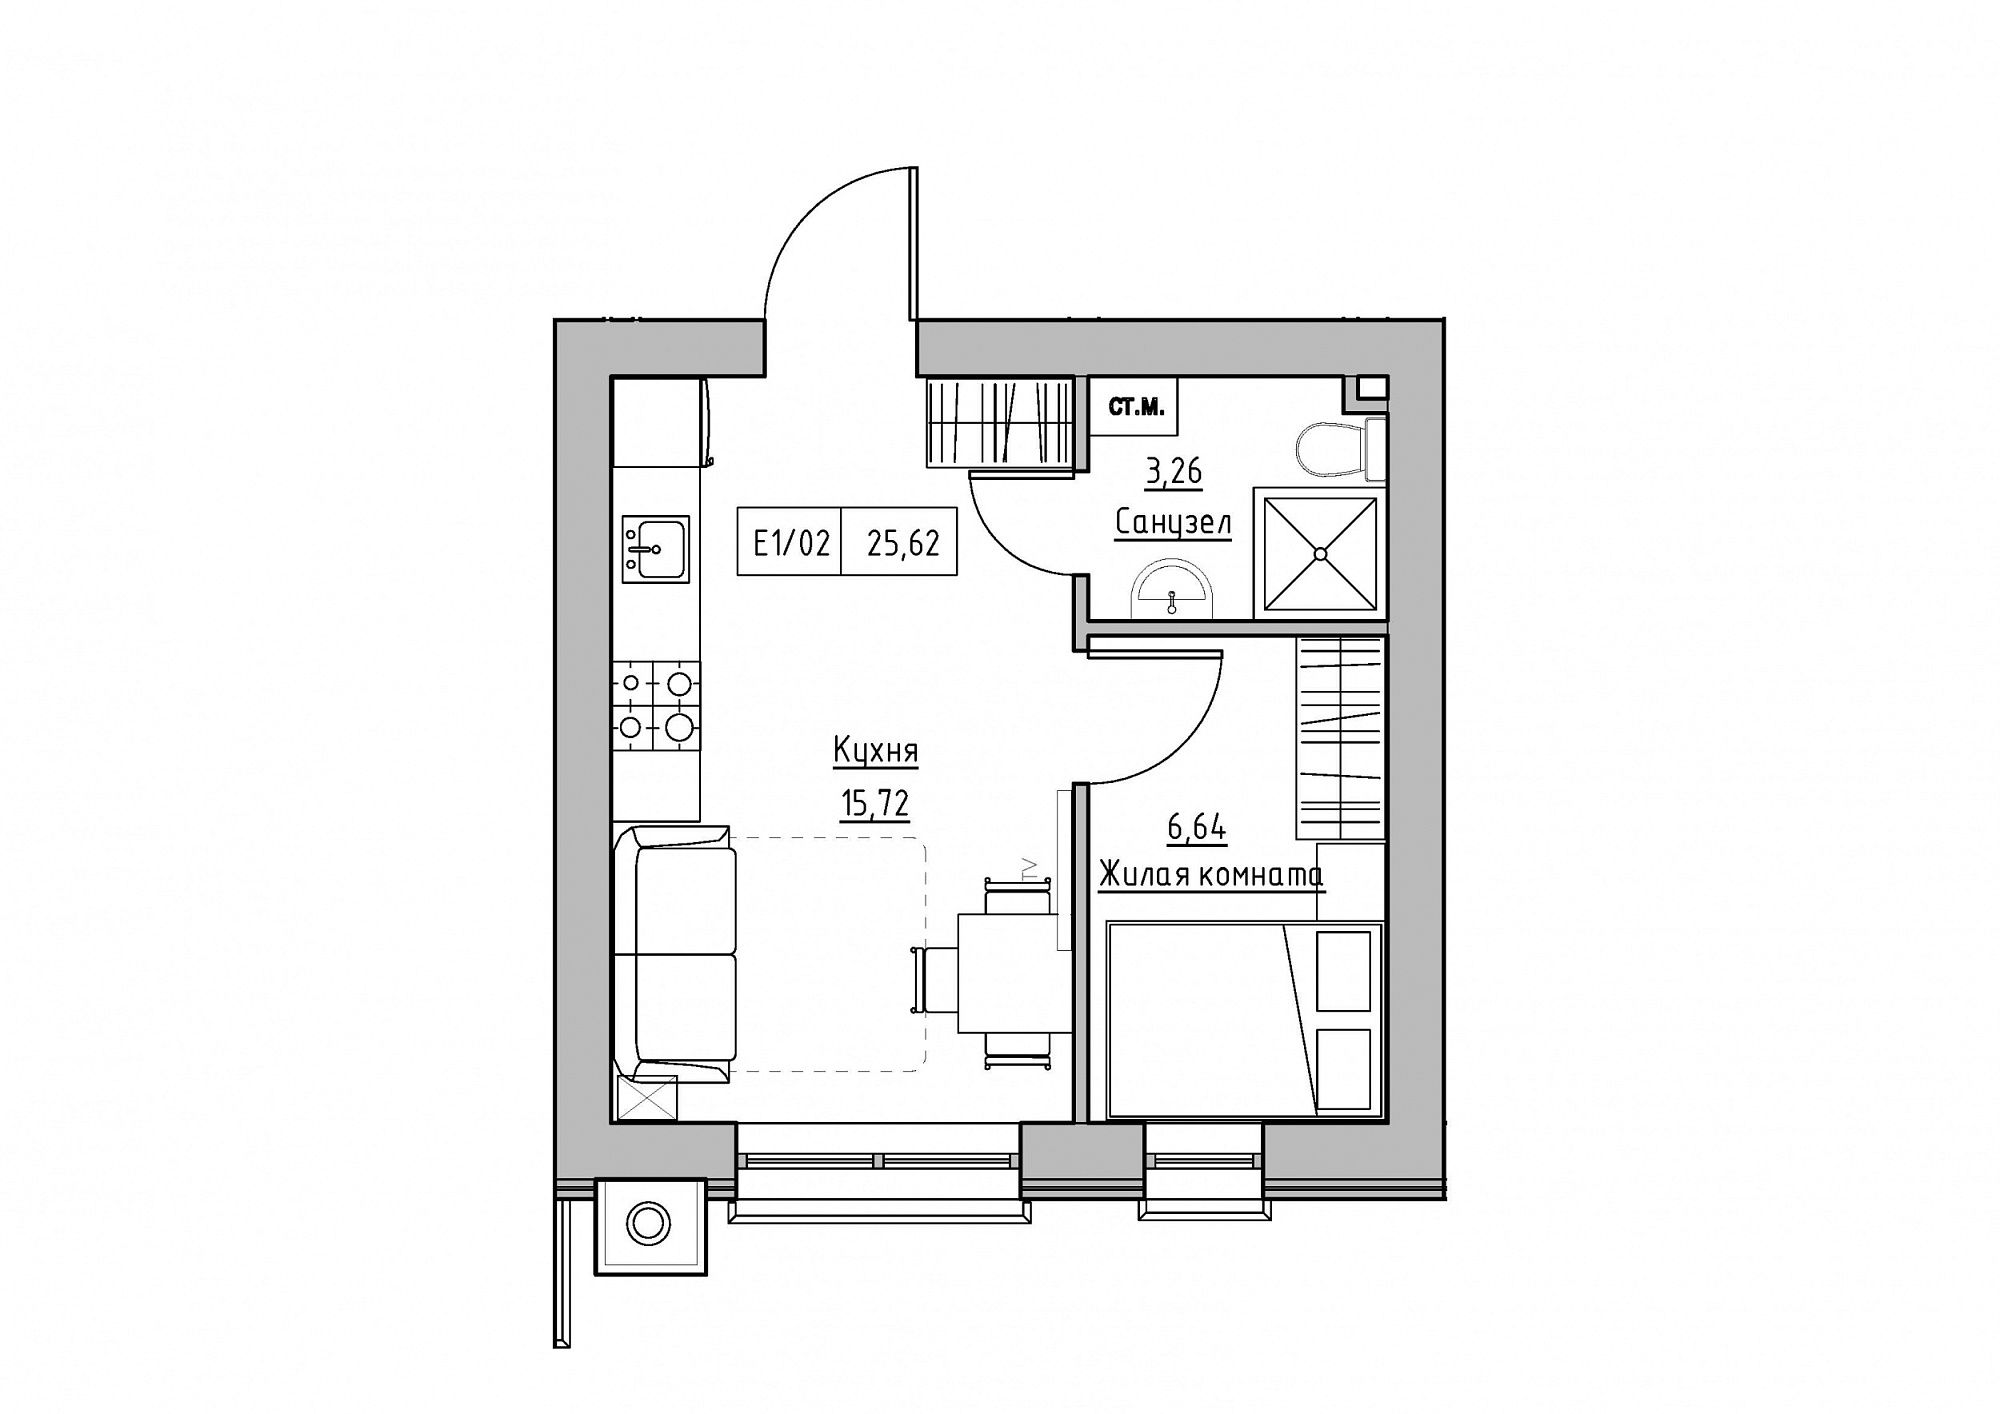 Планування 1-к квартира площею 25.62м2, KS-012-05/0004.